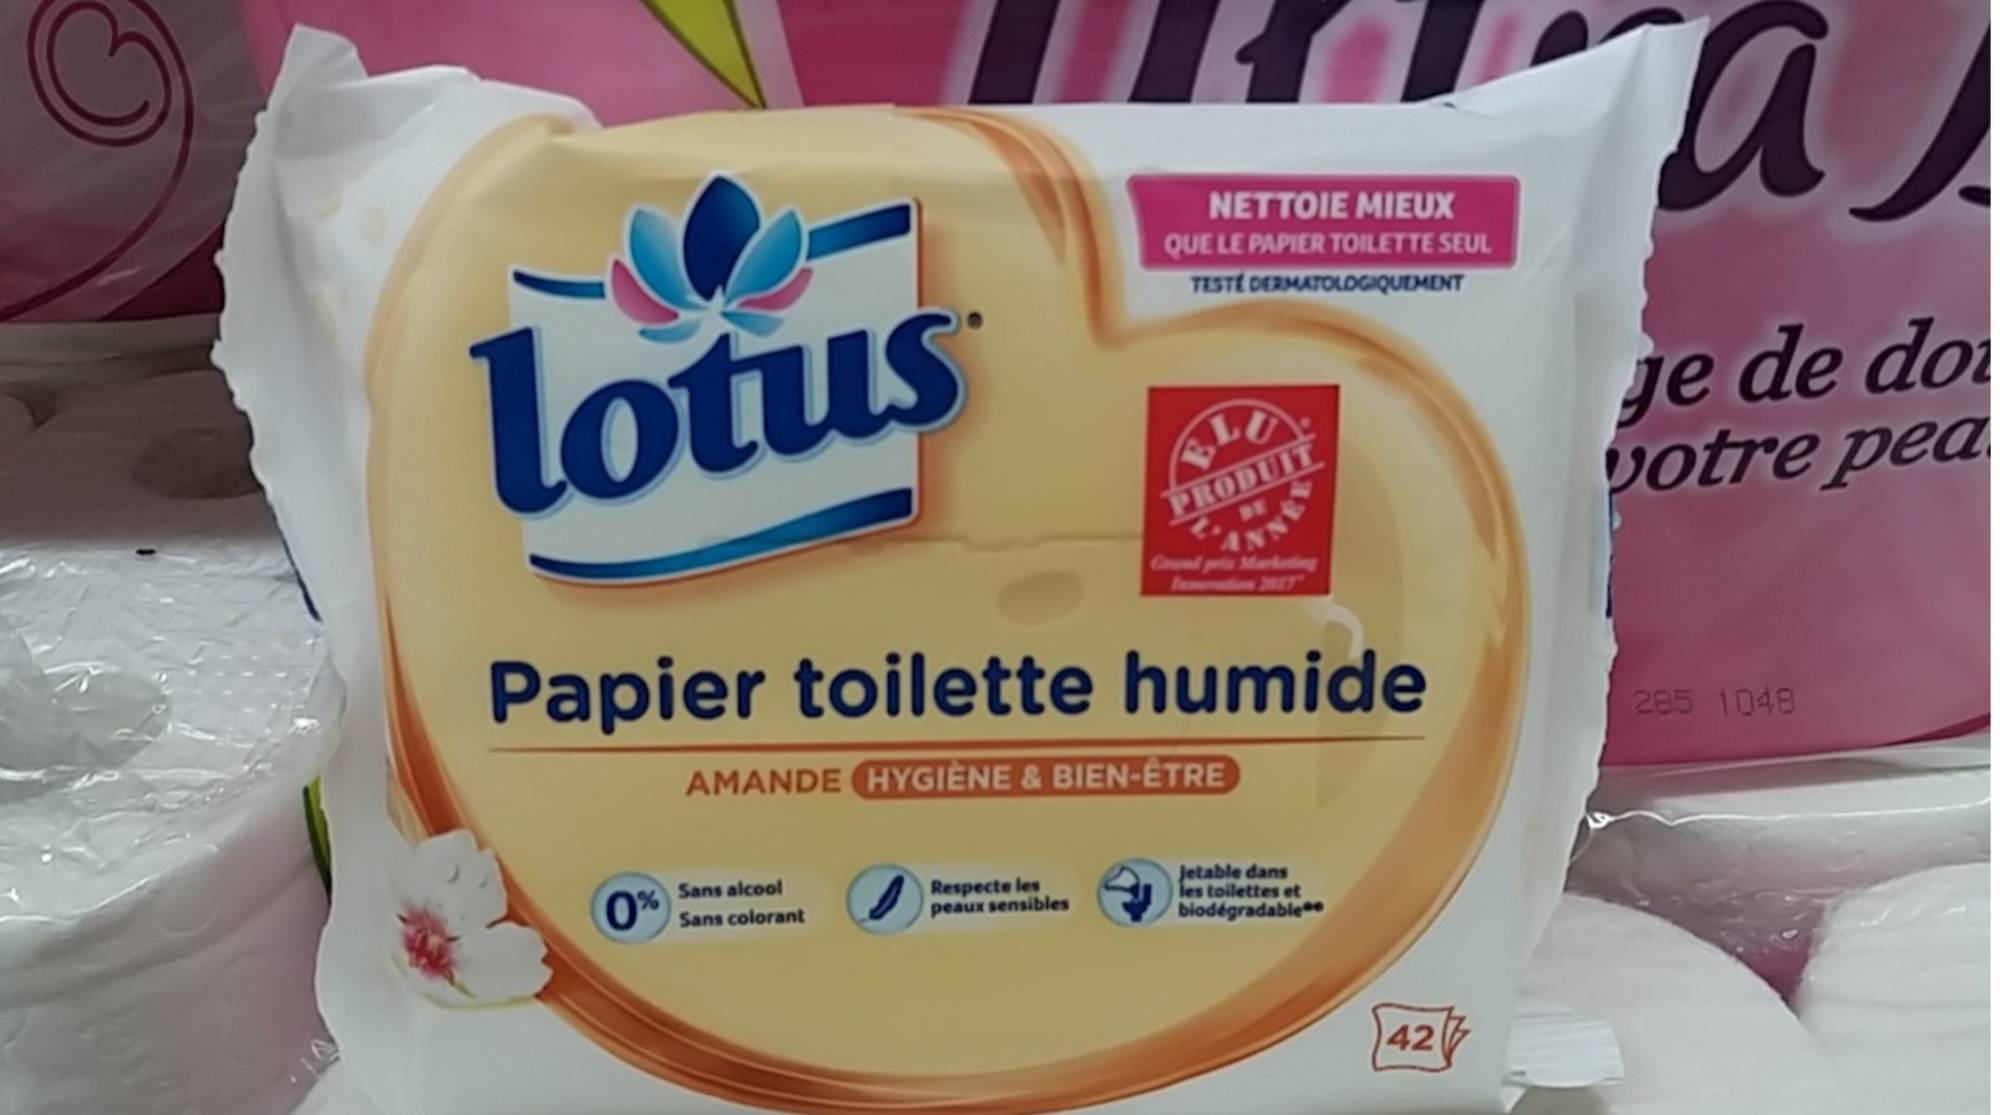 Composition LOTUS Aloe douceur - Papier toilette humide - UFC-Que Choisir